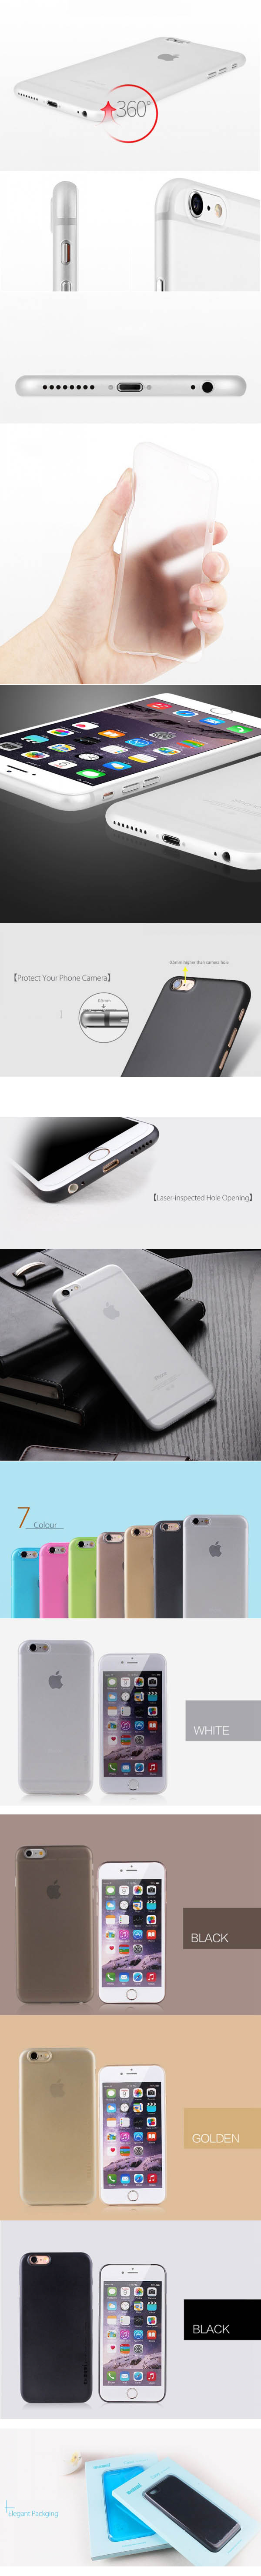 Ốp lưng iphone 6S Plus/6 Plus Memumi Super Slim 0.3mm 33